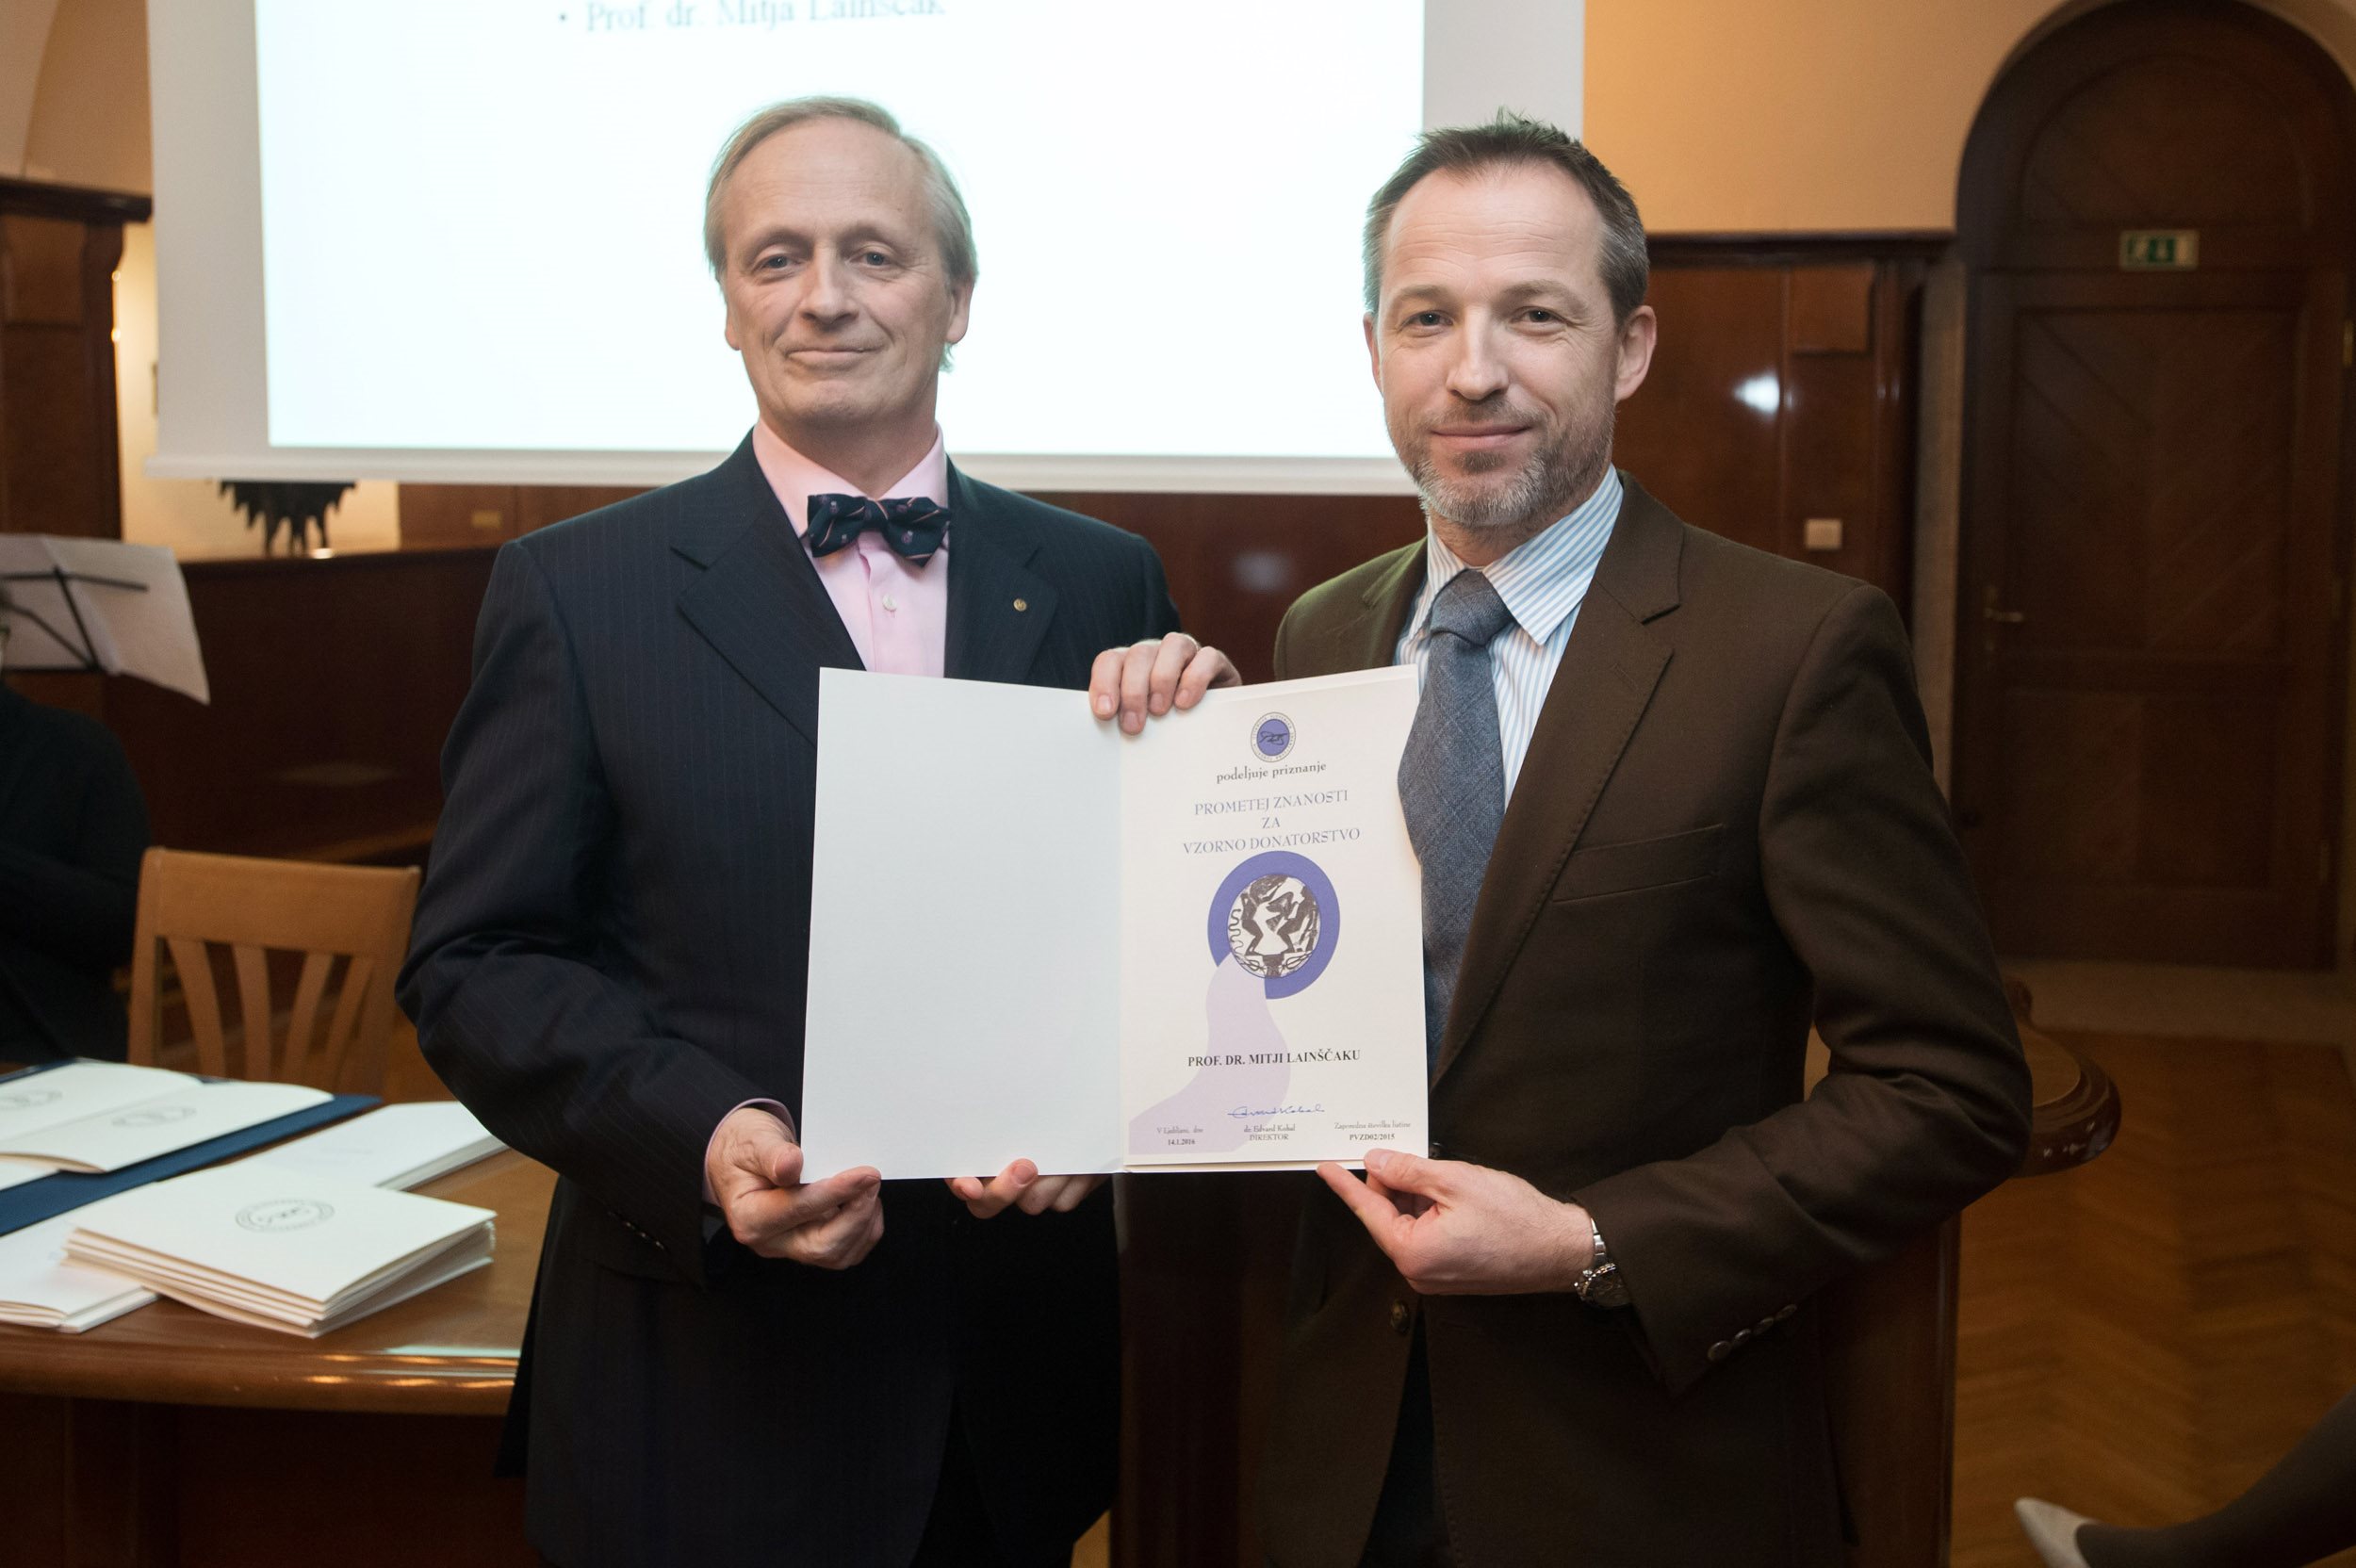  Pom. akad. dr. Mitja Lainščak prejel priznanje »Prometej znanosti za vzorno donatorstvo«; foto: splet